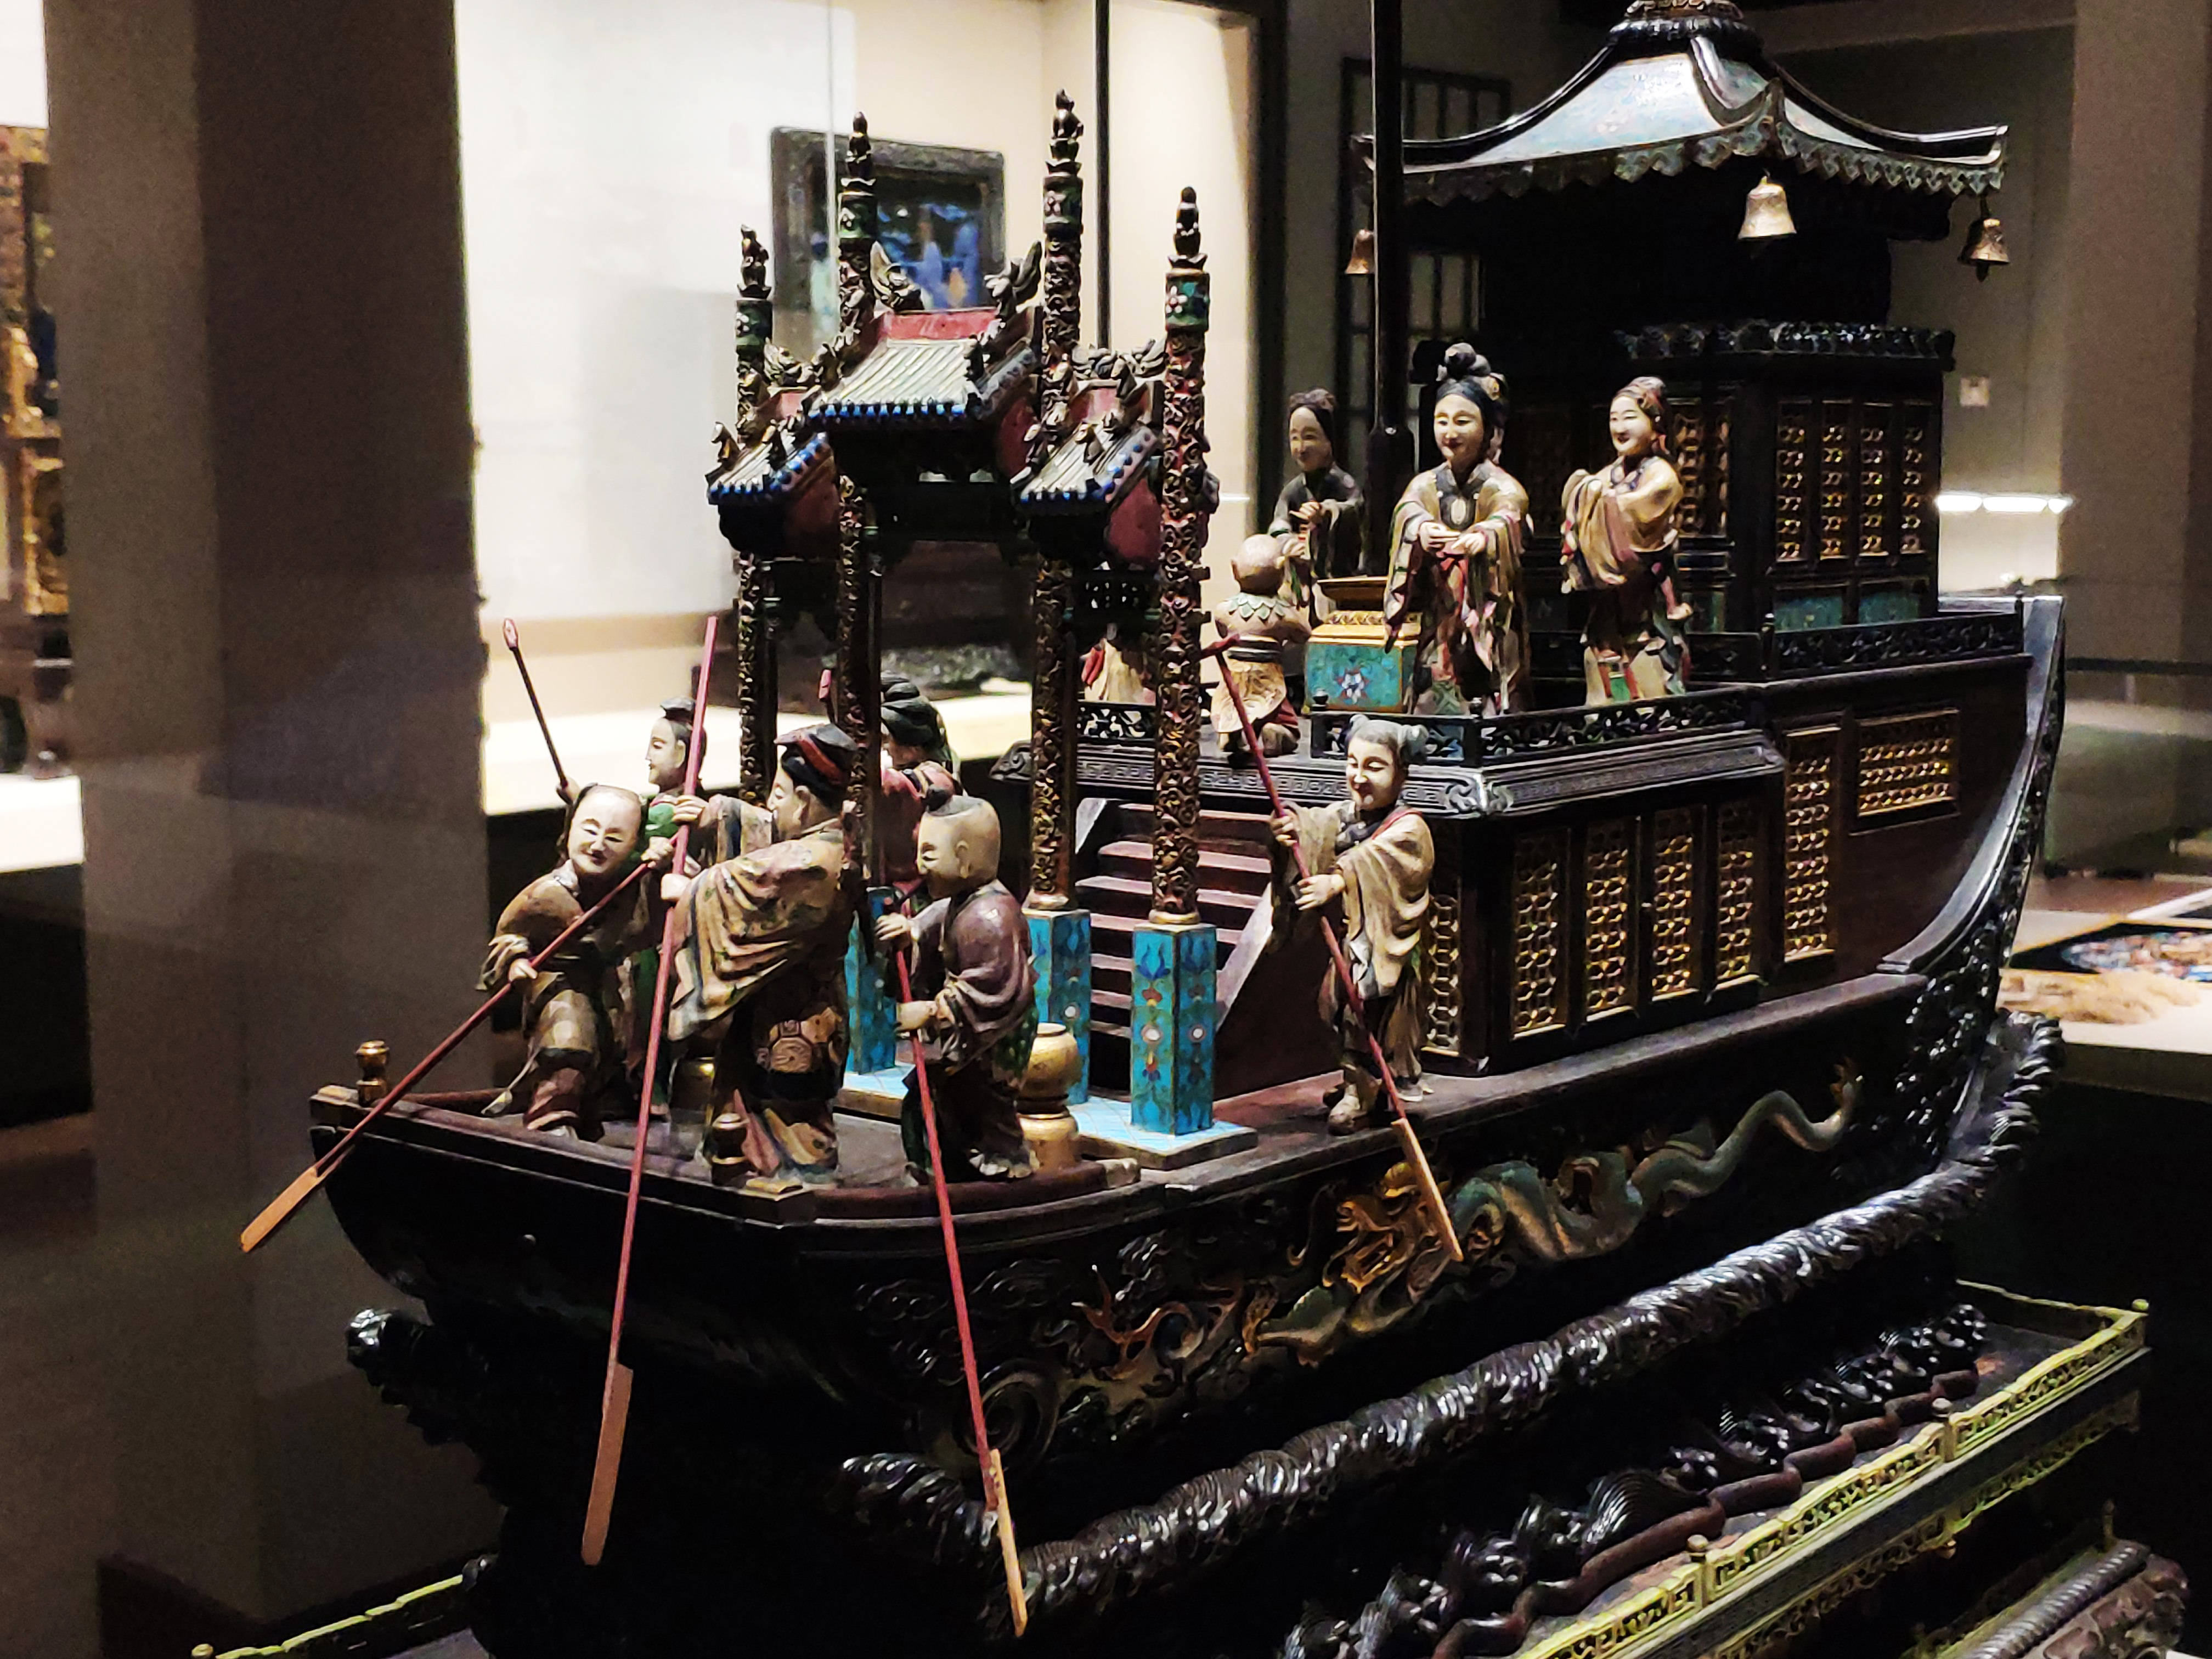 清代进贡寿礼,凝聚匠心的紫檀嵌珐琅雕塑人物楼船,尽显广州工匠精湛